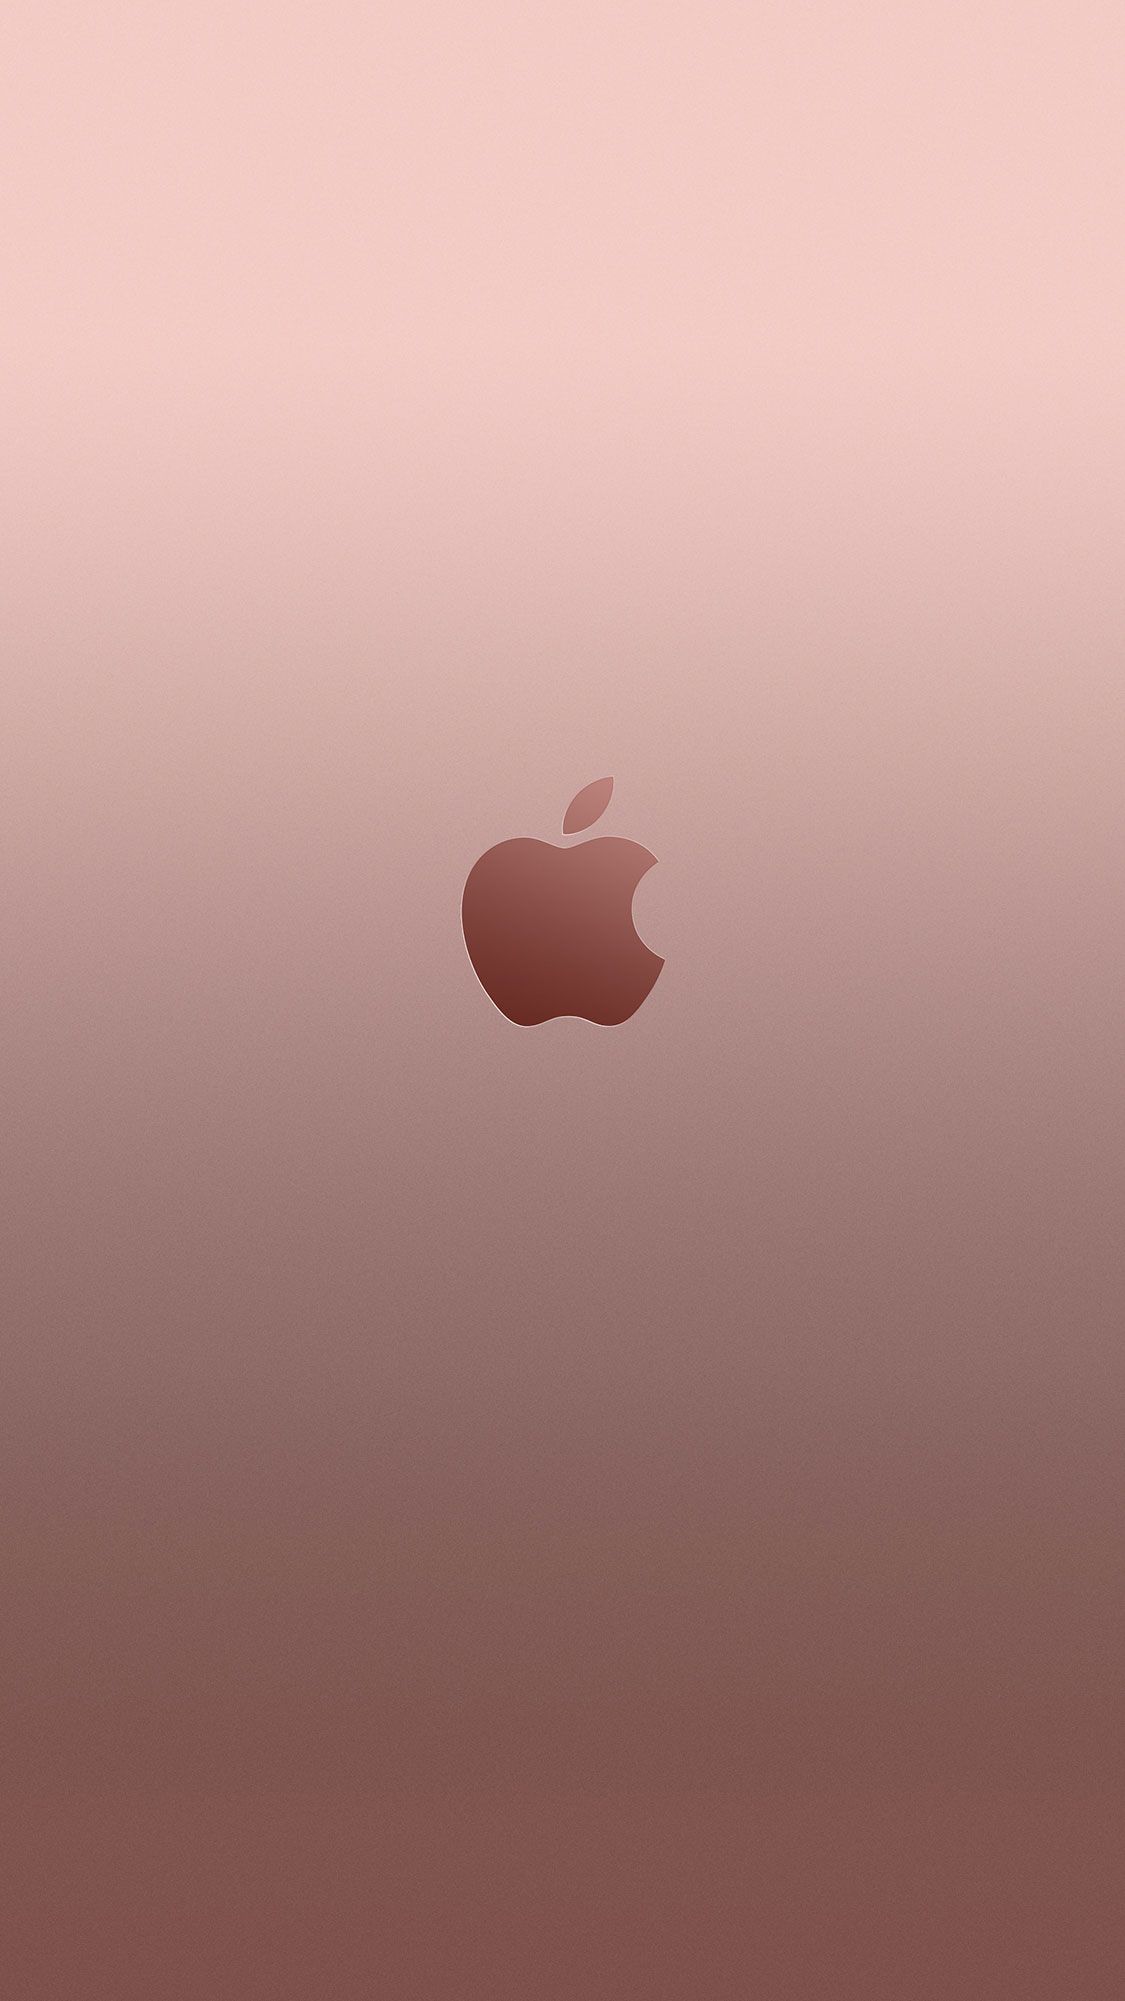 carta da parati iphone 6s tumblr,rosa,cielo,cuore,illustrazione,calma